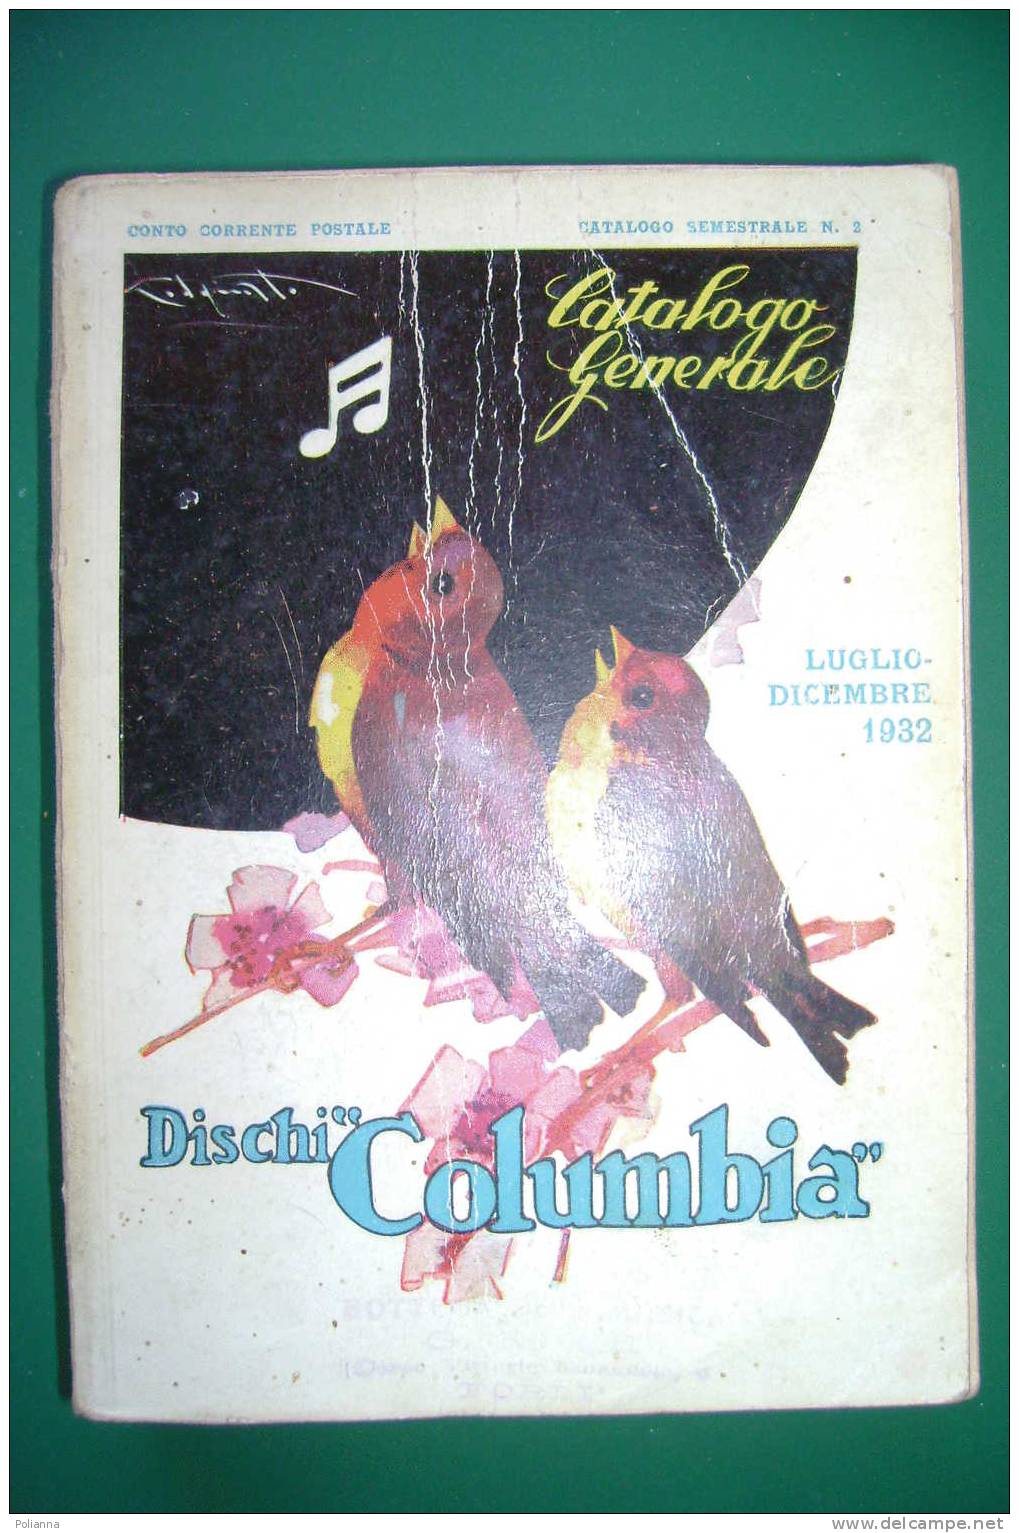 PDM/17 CATALOGO GENERALE 1932-DISCHI COLUMBIA/ill. Codognato - Música